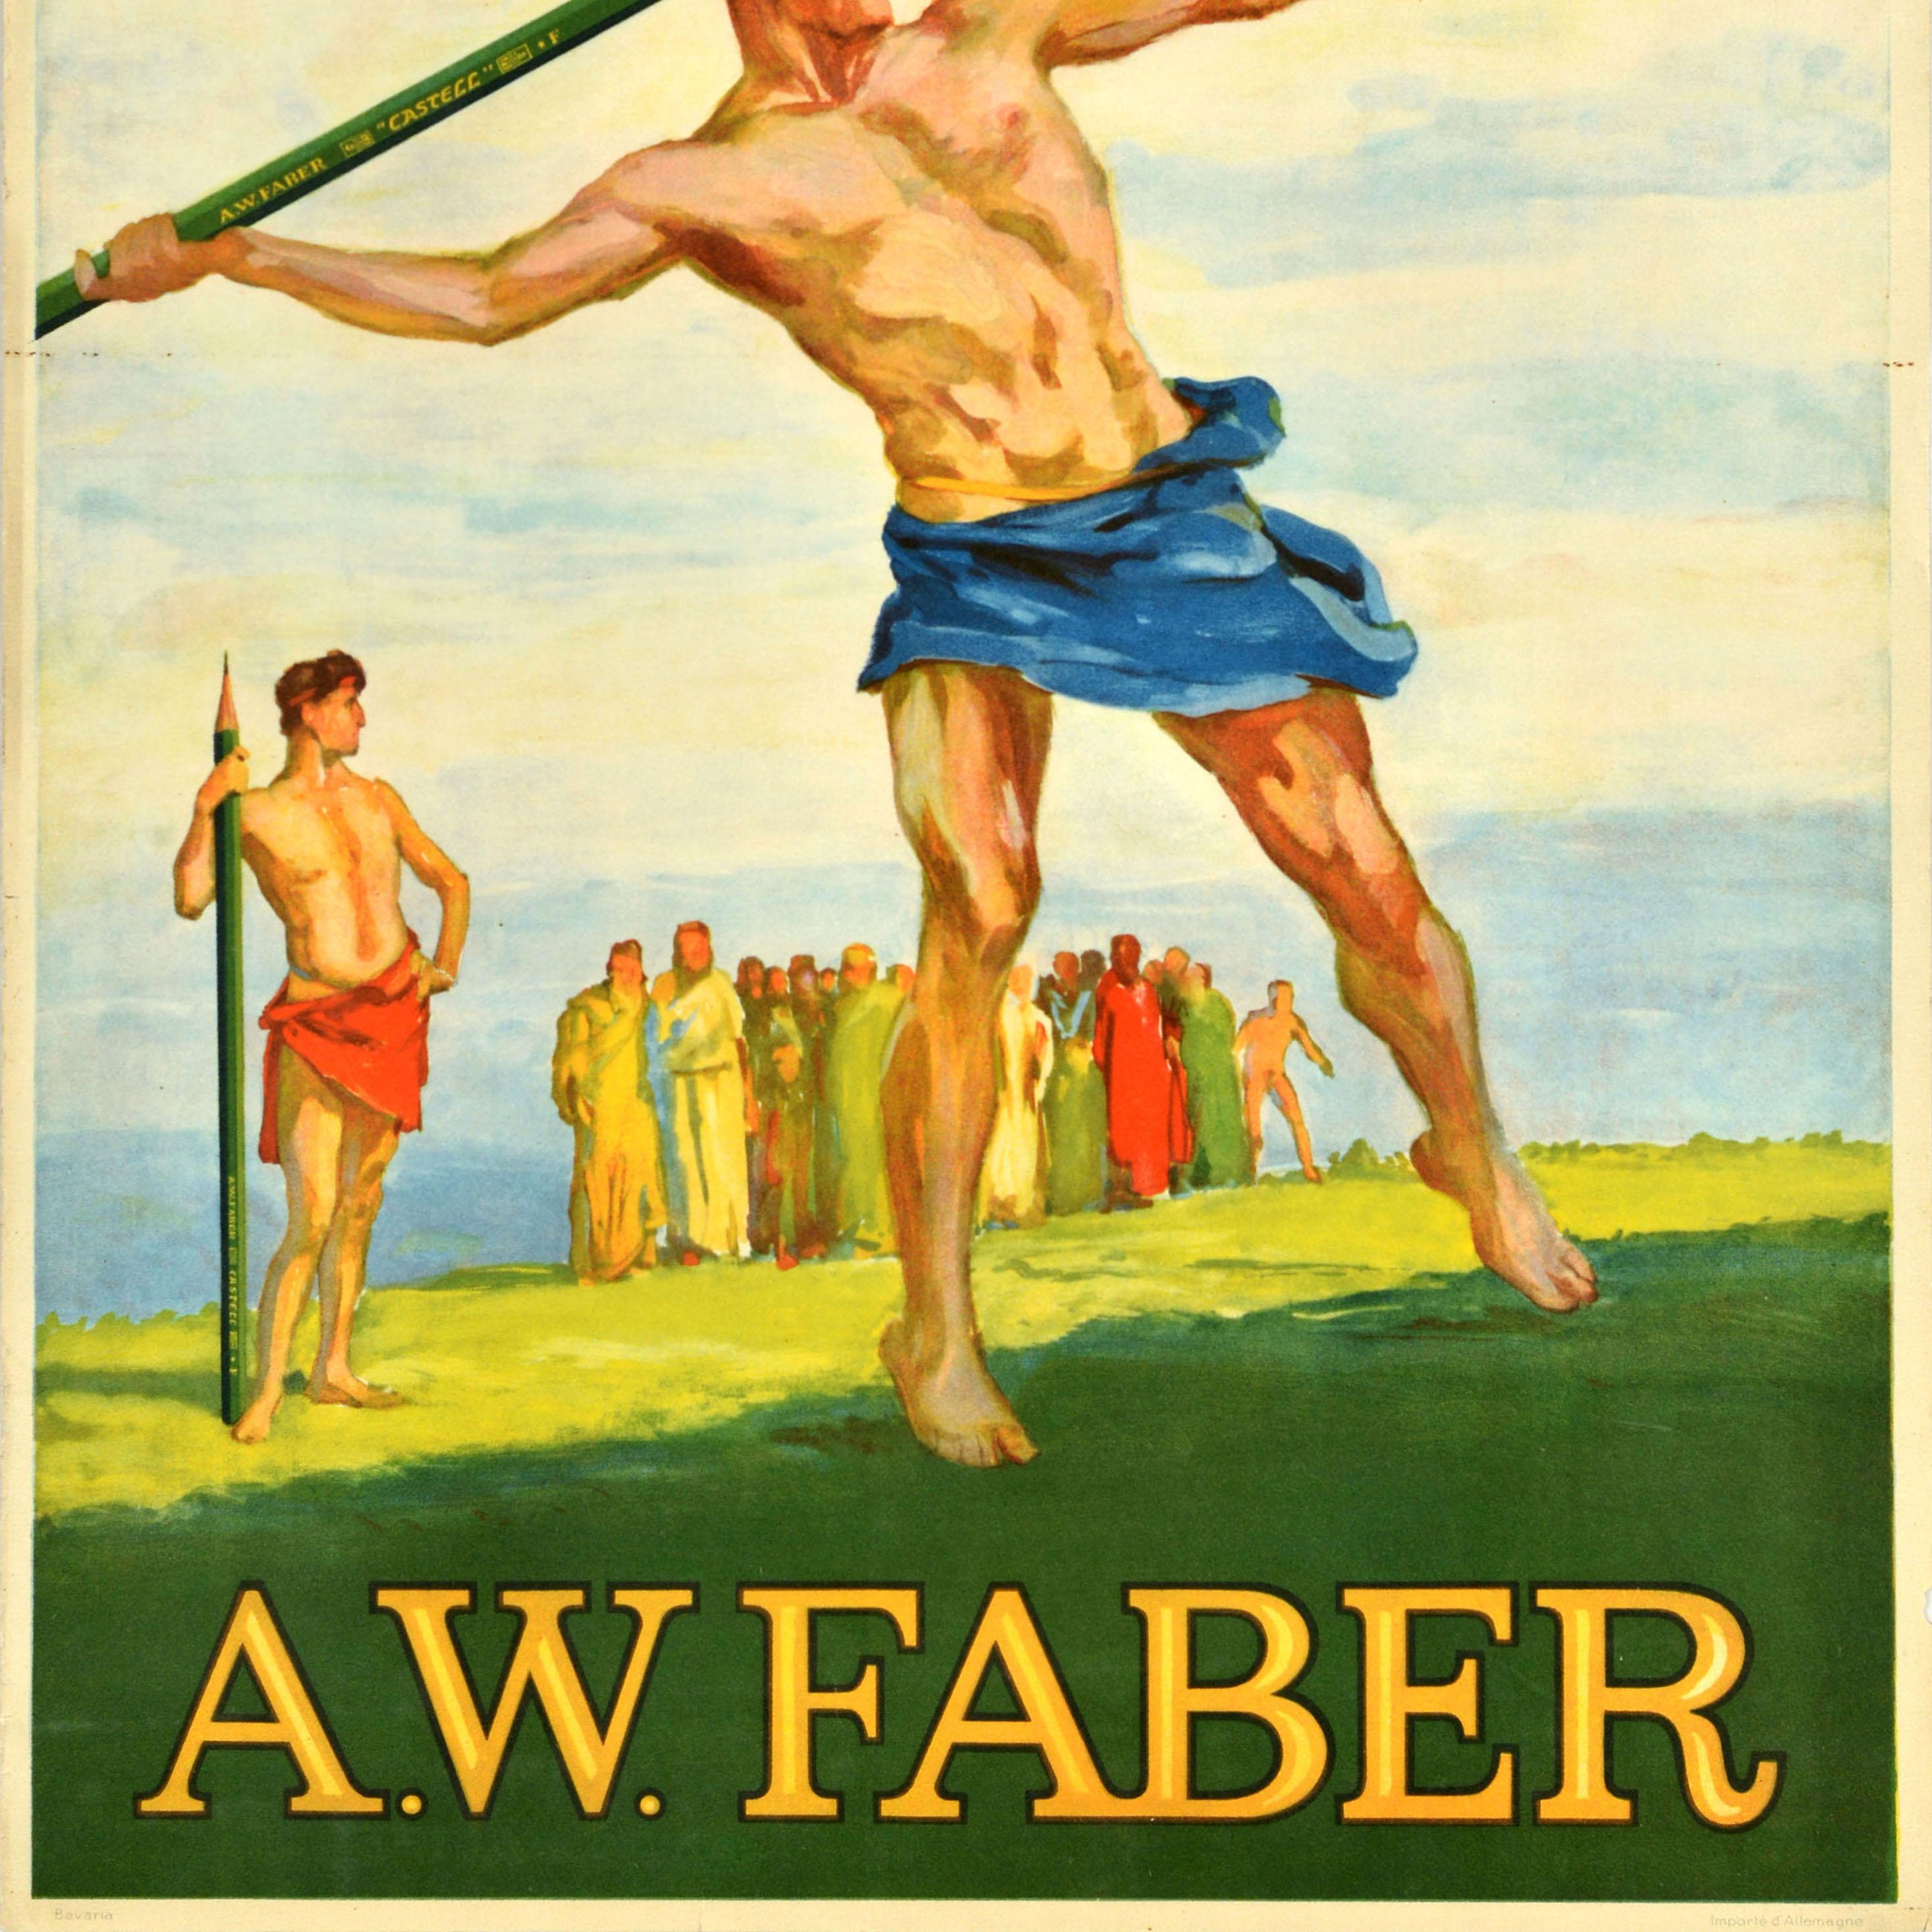 Originales antikes Werbeplakat für Castell A.W. Faber-Briefpapier mit einem jungen Athleten, der einen grünen AW Faber-Bleistift als Speer wirft, mit einem anderen Speerwerfer und Zuschauern im Hintergrund, alle in antiker Toga-Kleidung gekleidet,